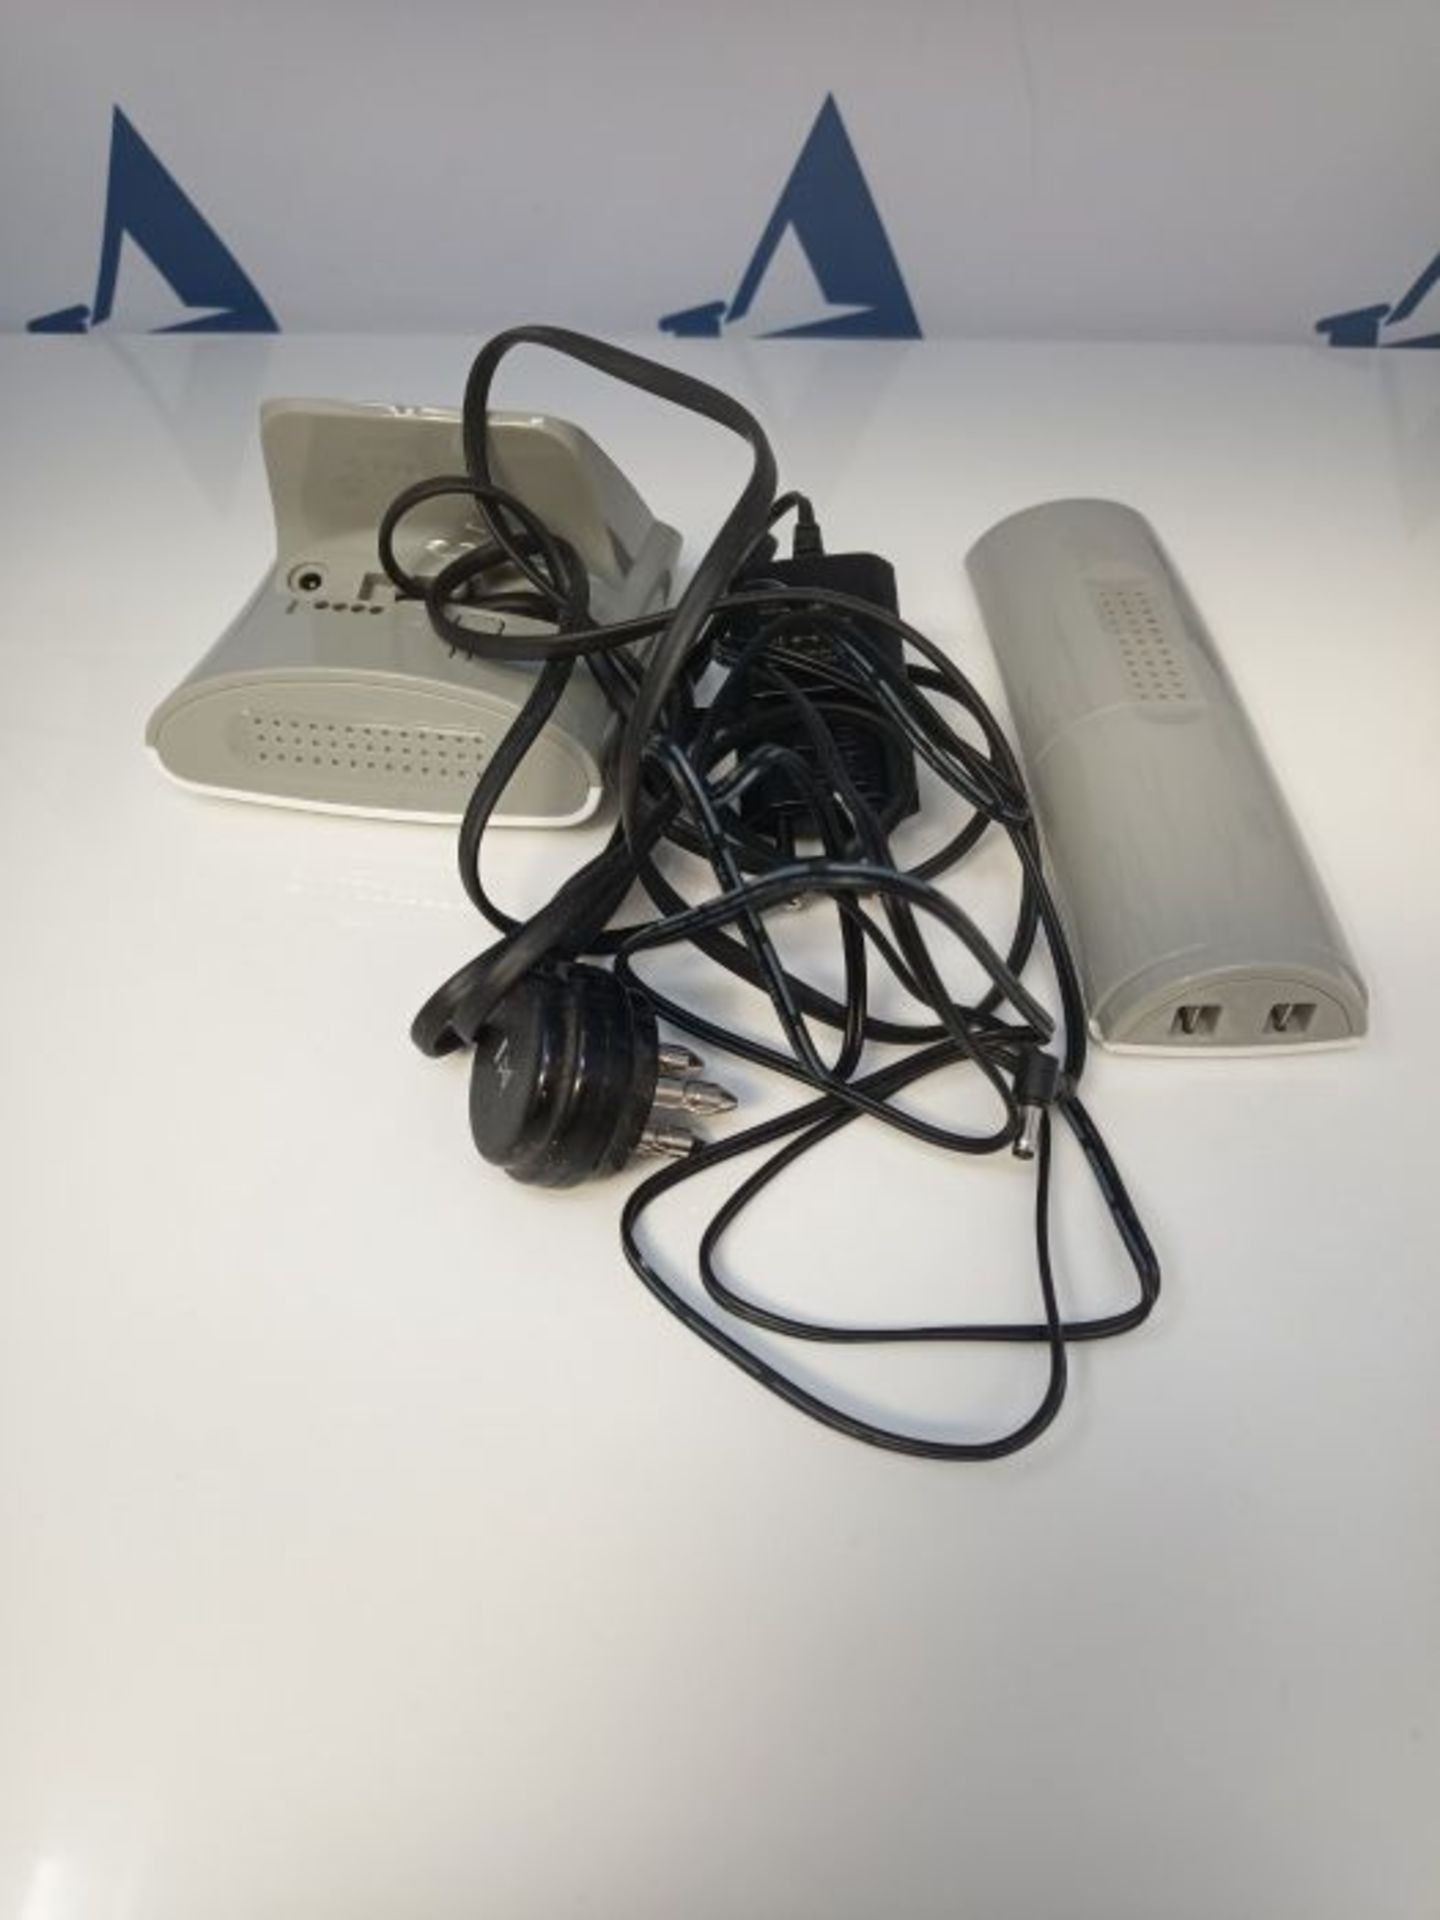 Alcatel F530 Telefono DECT Identificatore di chiamata Grigio, Bianco - Image 3 of 3